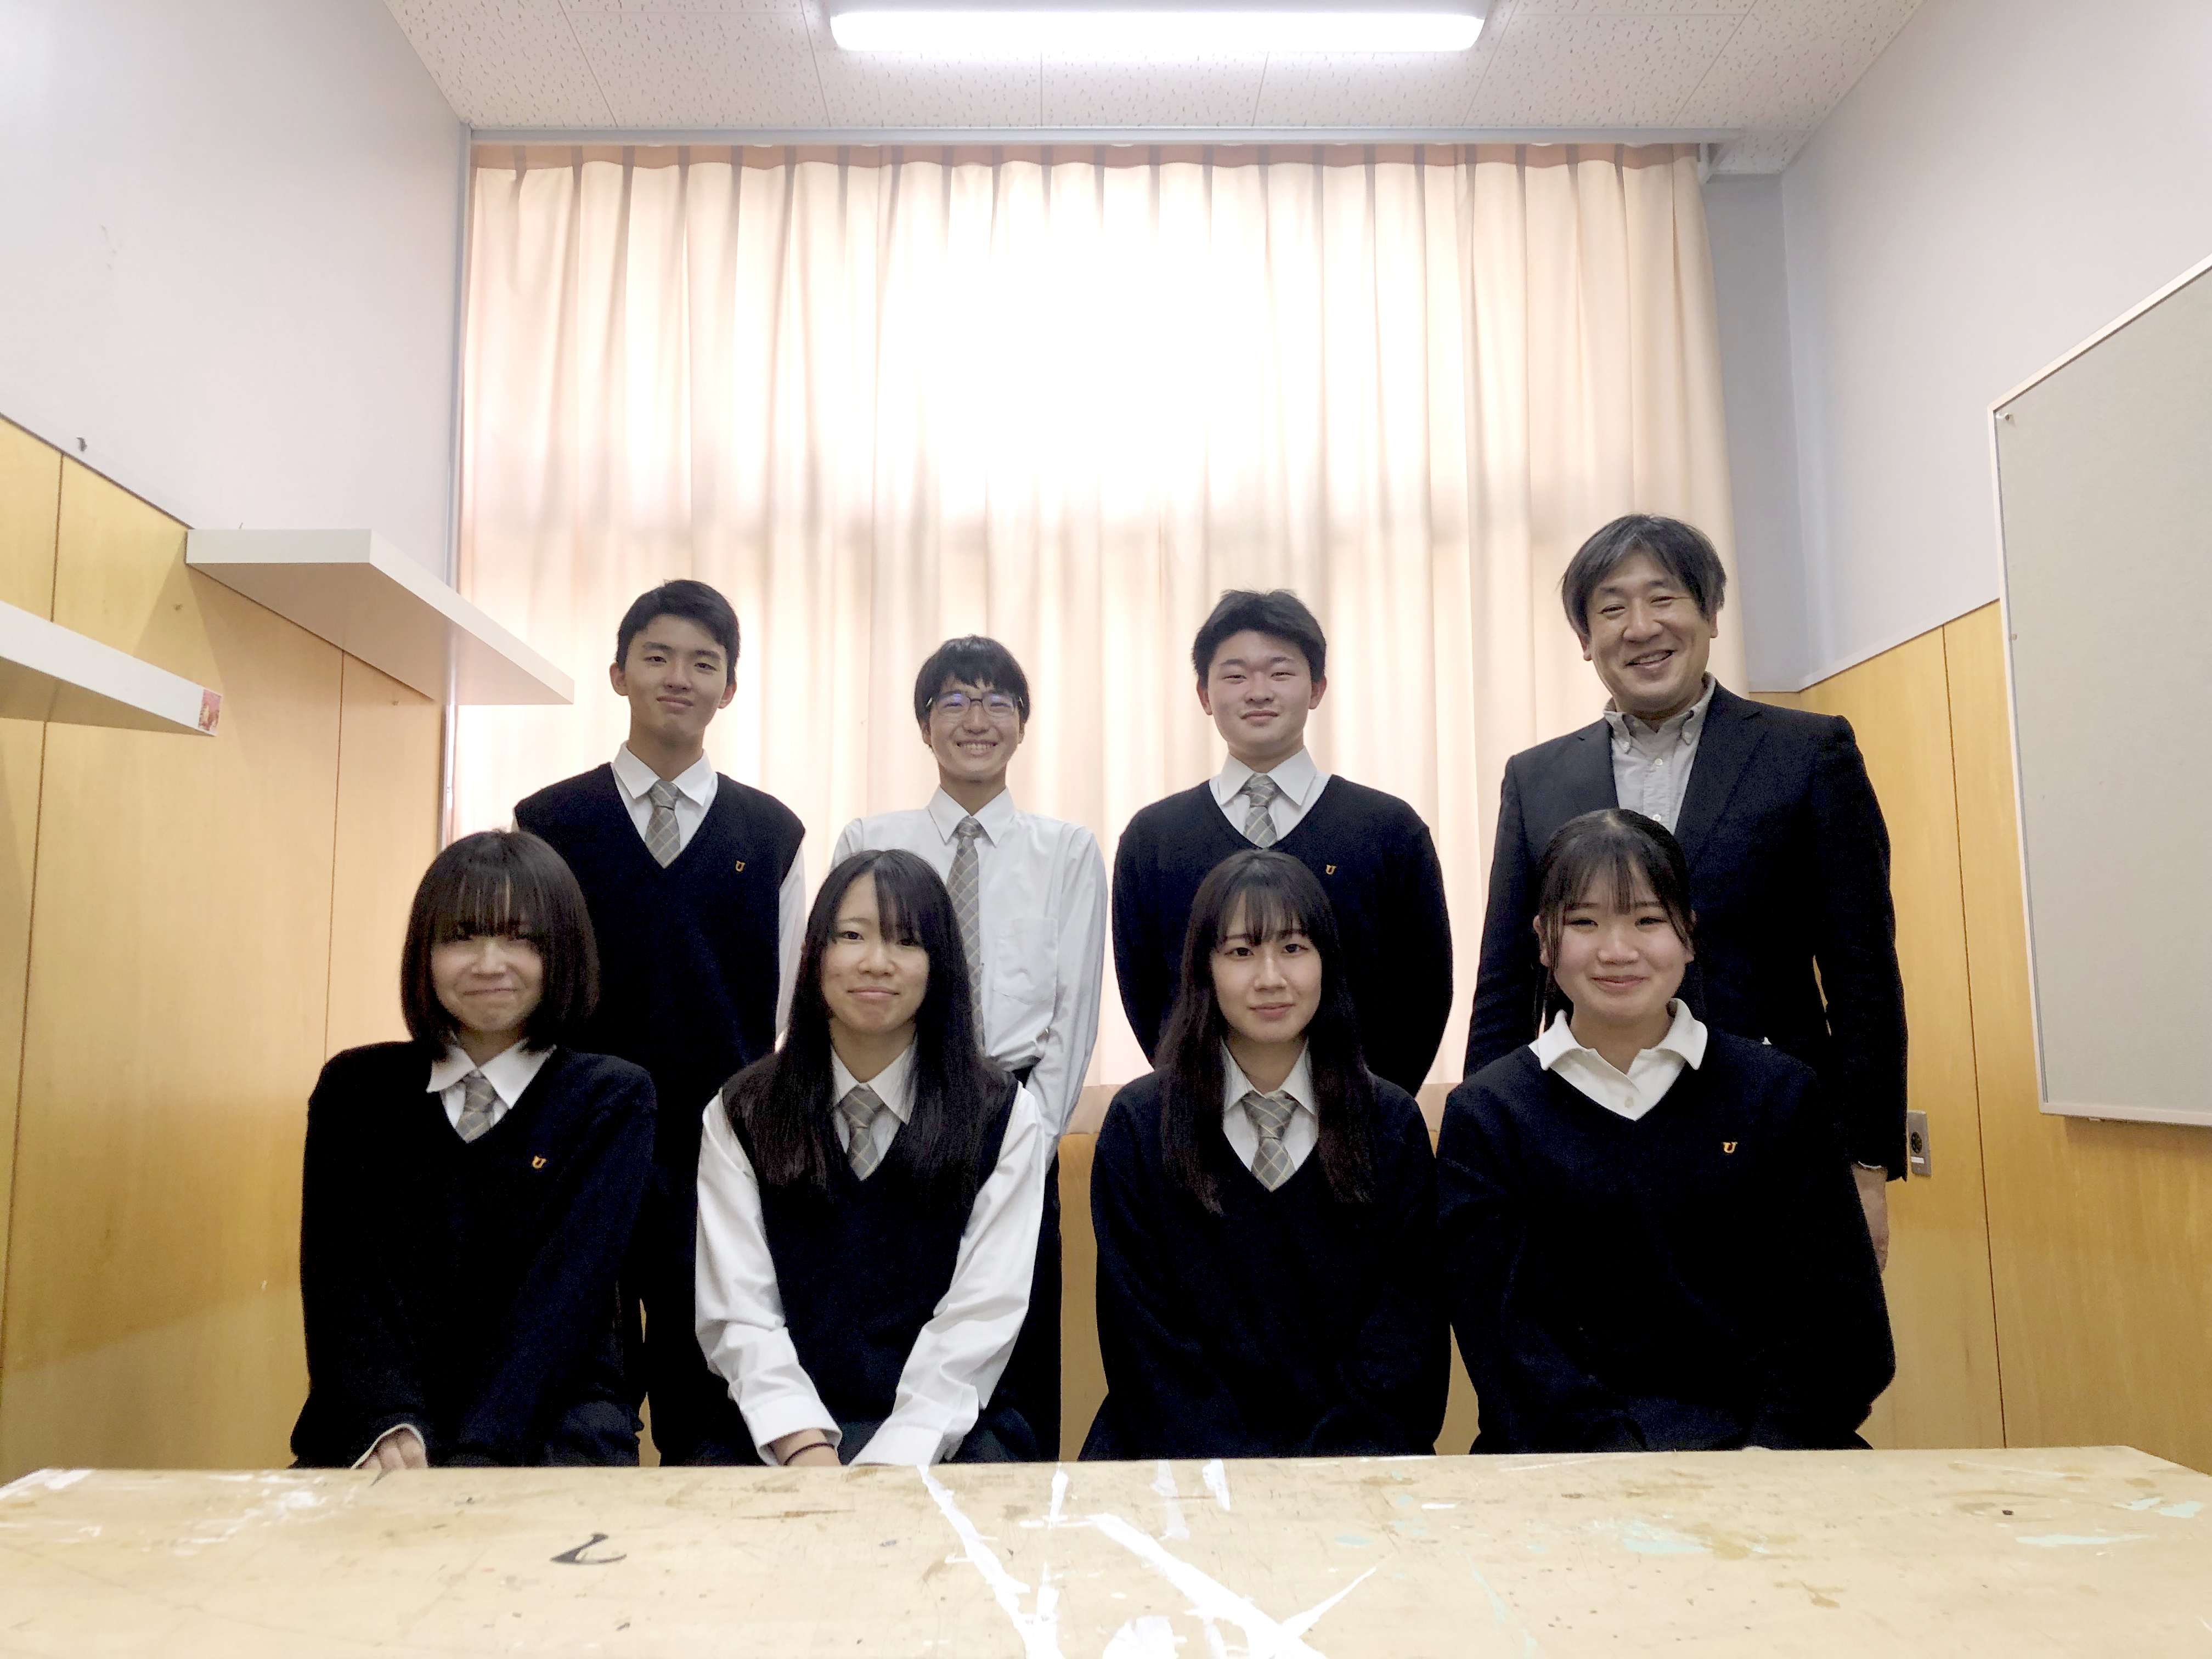 ฮิโระชินิยามะ + โกเบวิทยาศาสตร์และเทคโนโลยีโรงเรียนมัธยม